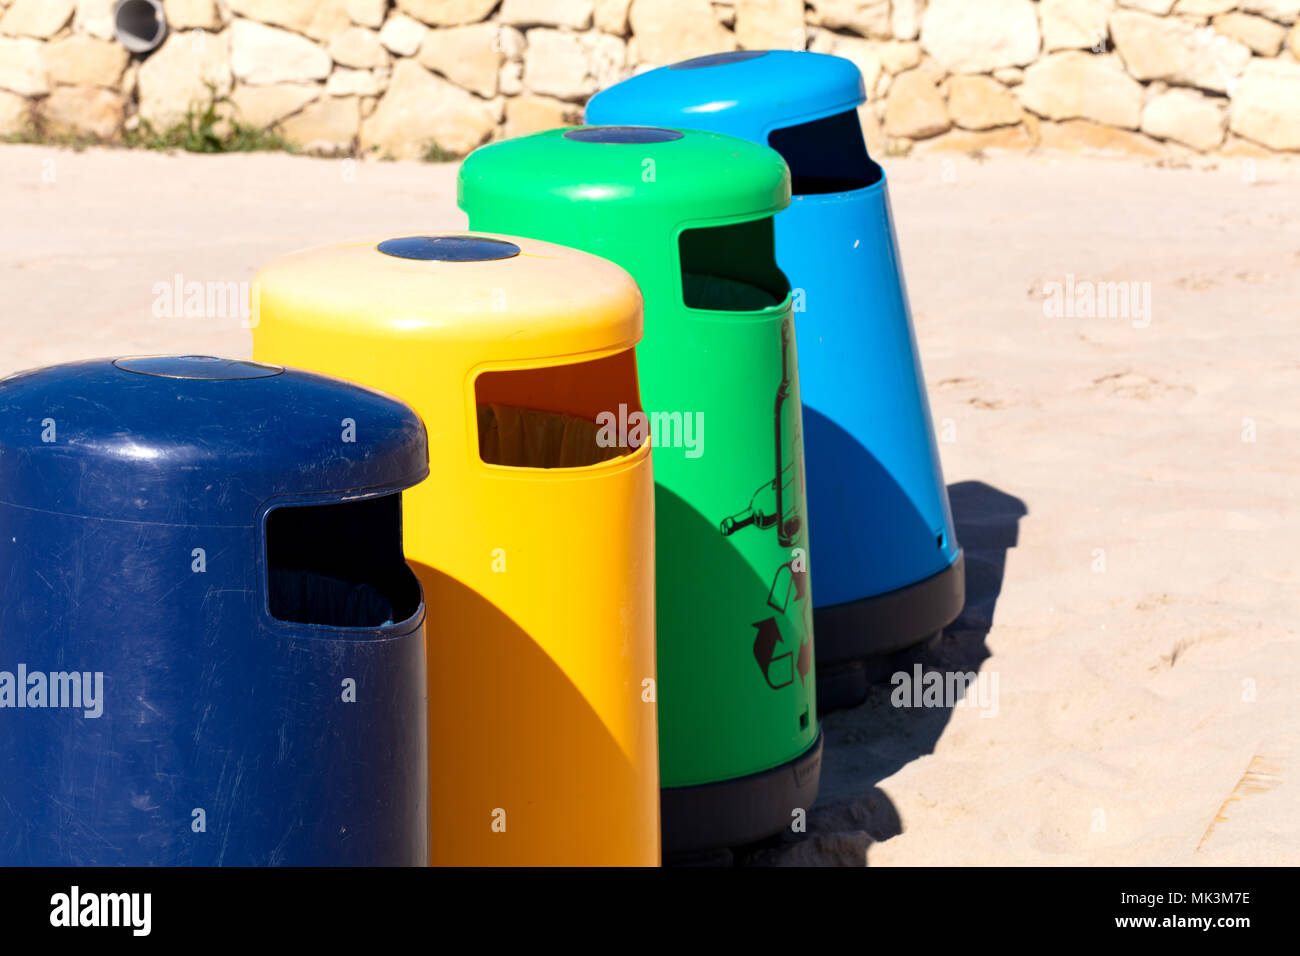 Selektive recicle Fächer mit unterschiedlichen Farben in einem mediterranen Strand Stockfoto